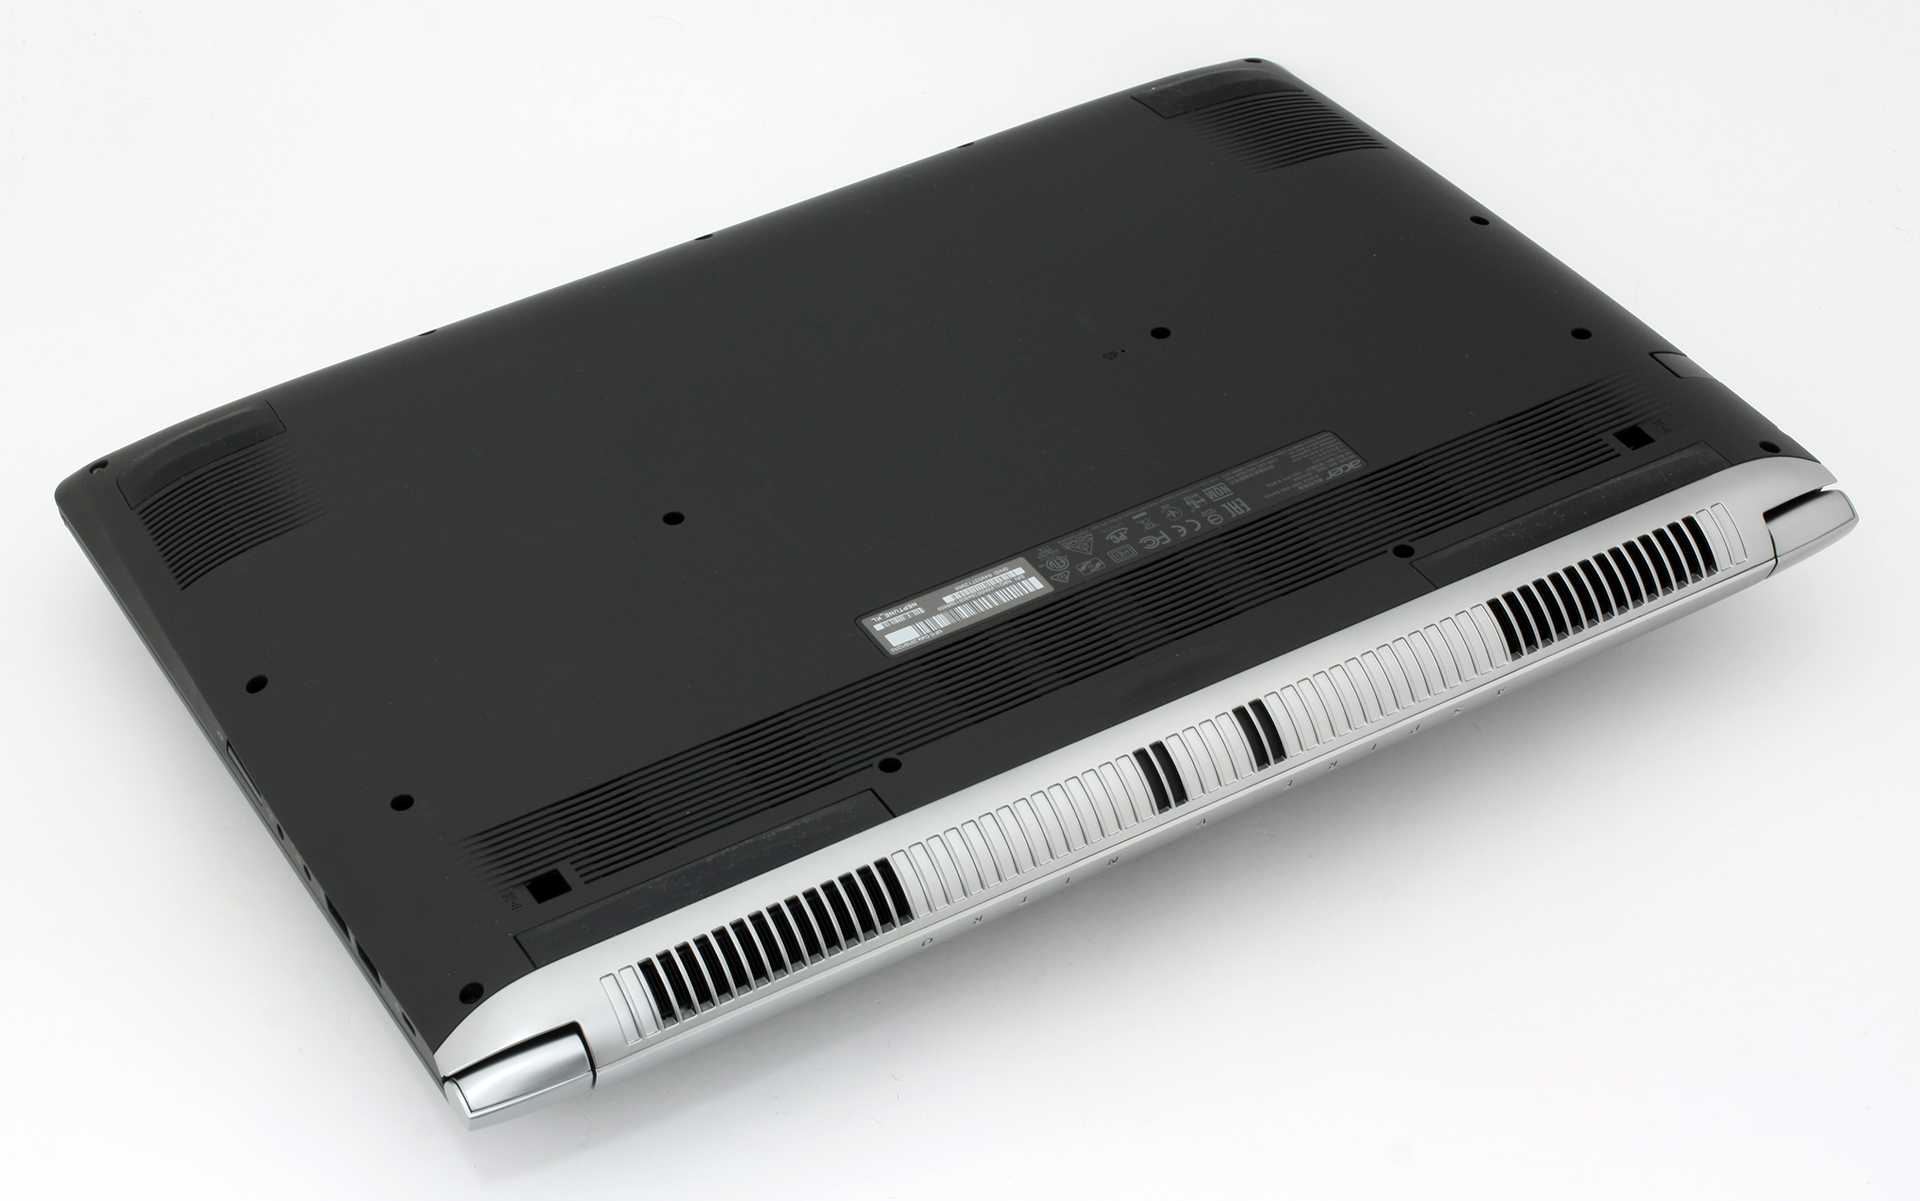 Ноутбук acer aspire vn7 791g-57re (nitro v17 black edition) — купить, цена и характеристики, отзывы